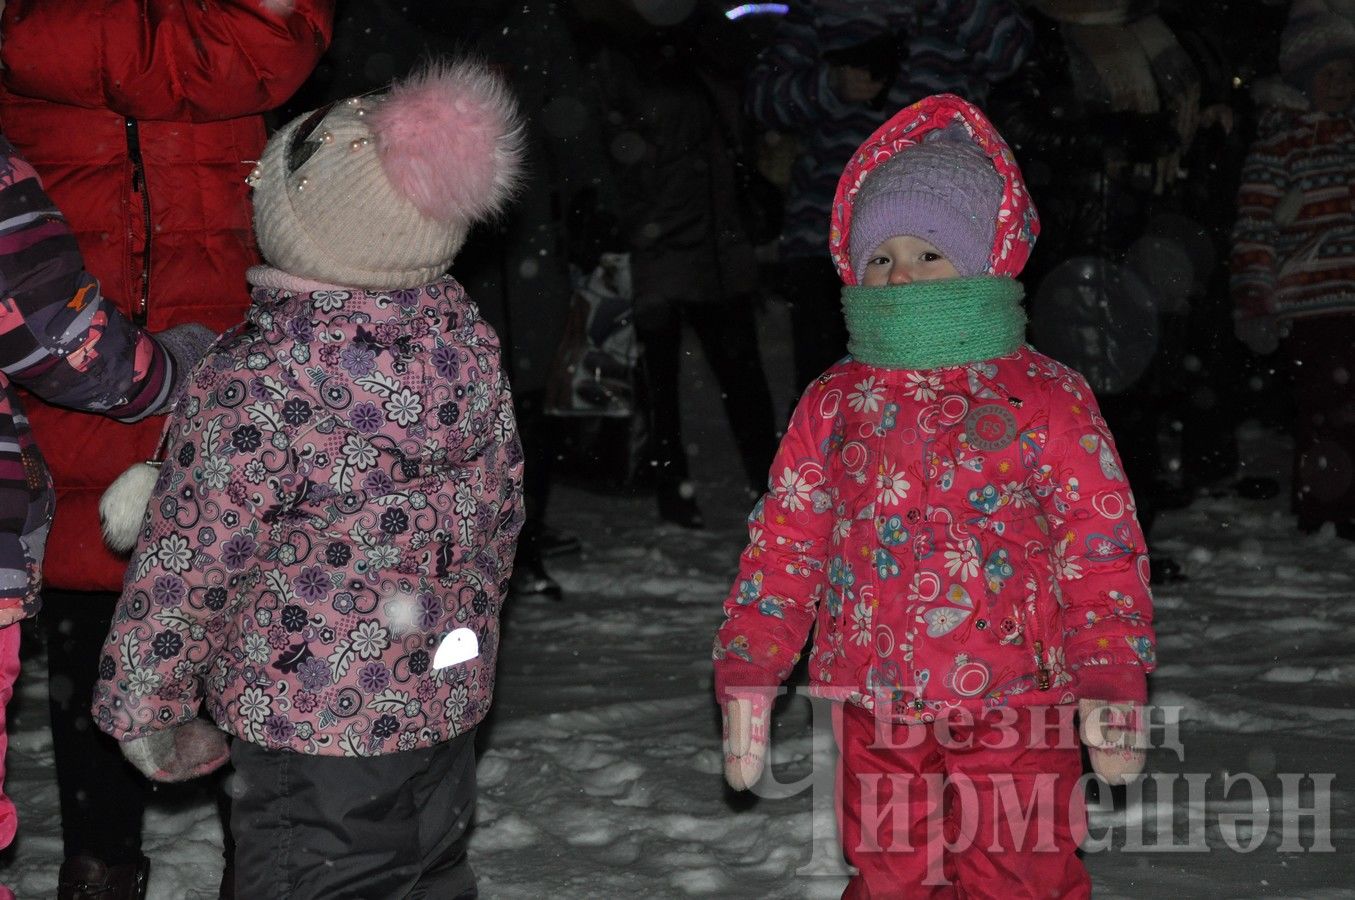 В вечер встречи Нового года по старому календарю в Черемшане, возле центральной елки состоялся парад креативных саней